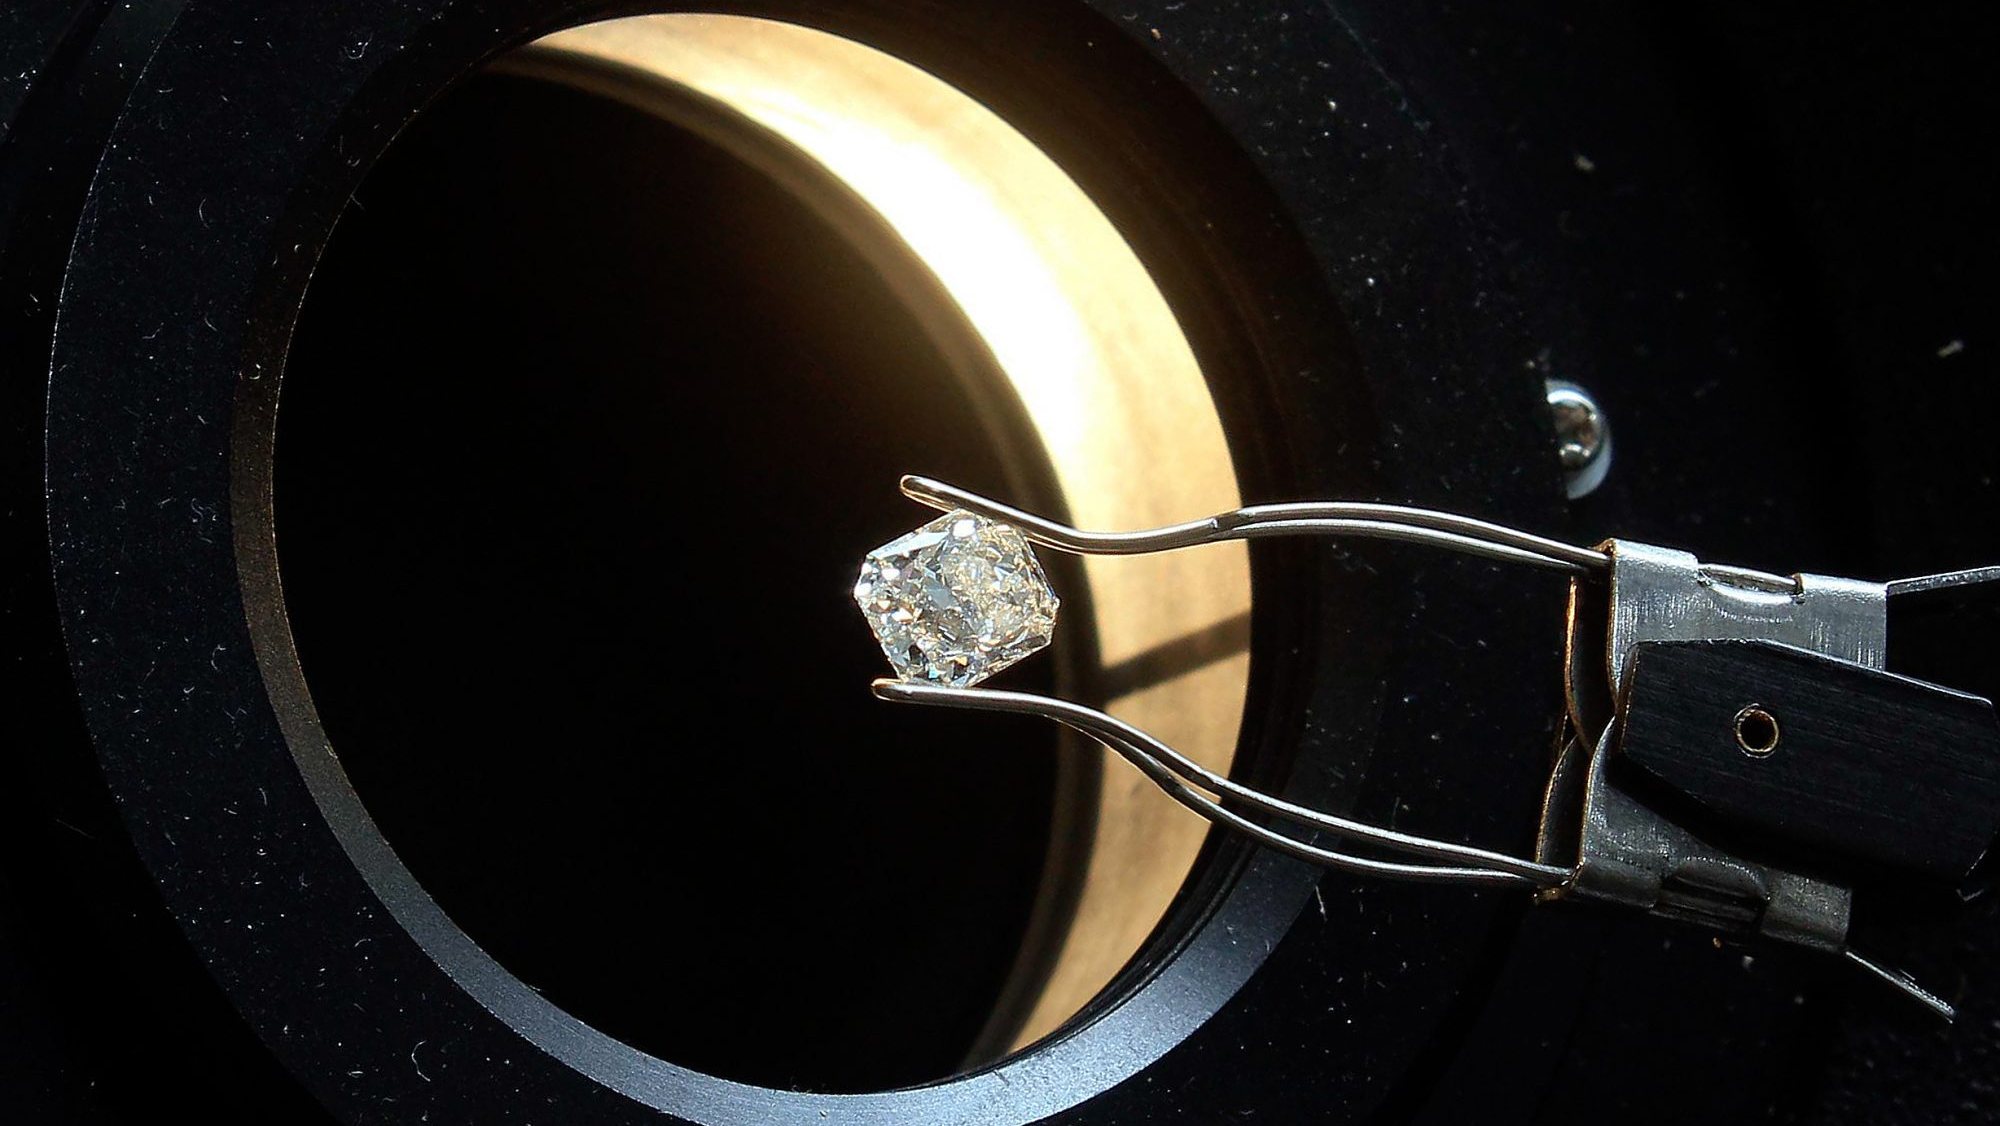 Polimento de diamantes na Stone Polished Diamond (SPD) em Luanda, Angola, 12 de fevereiro de 2019. O Governo angolano anunciou hoje que cerca de 20% da produção de diamantes será direcionada a fábricas de lapidação a serem instaladas no país, uma delas, hoje inaugurada, a Stone Polished Diamond (SPD), orçada em 4,3 milhões de euros. AMPE ROGÉRIO/LUSA